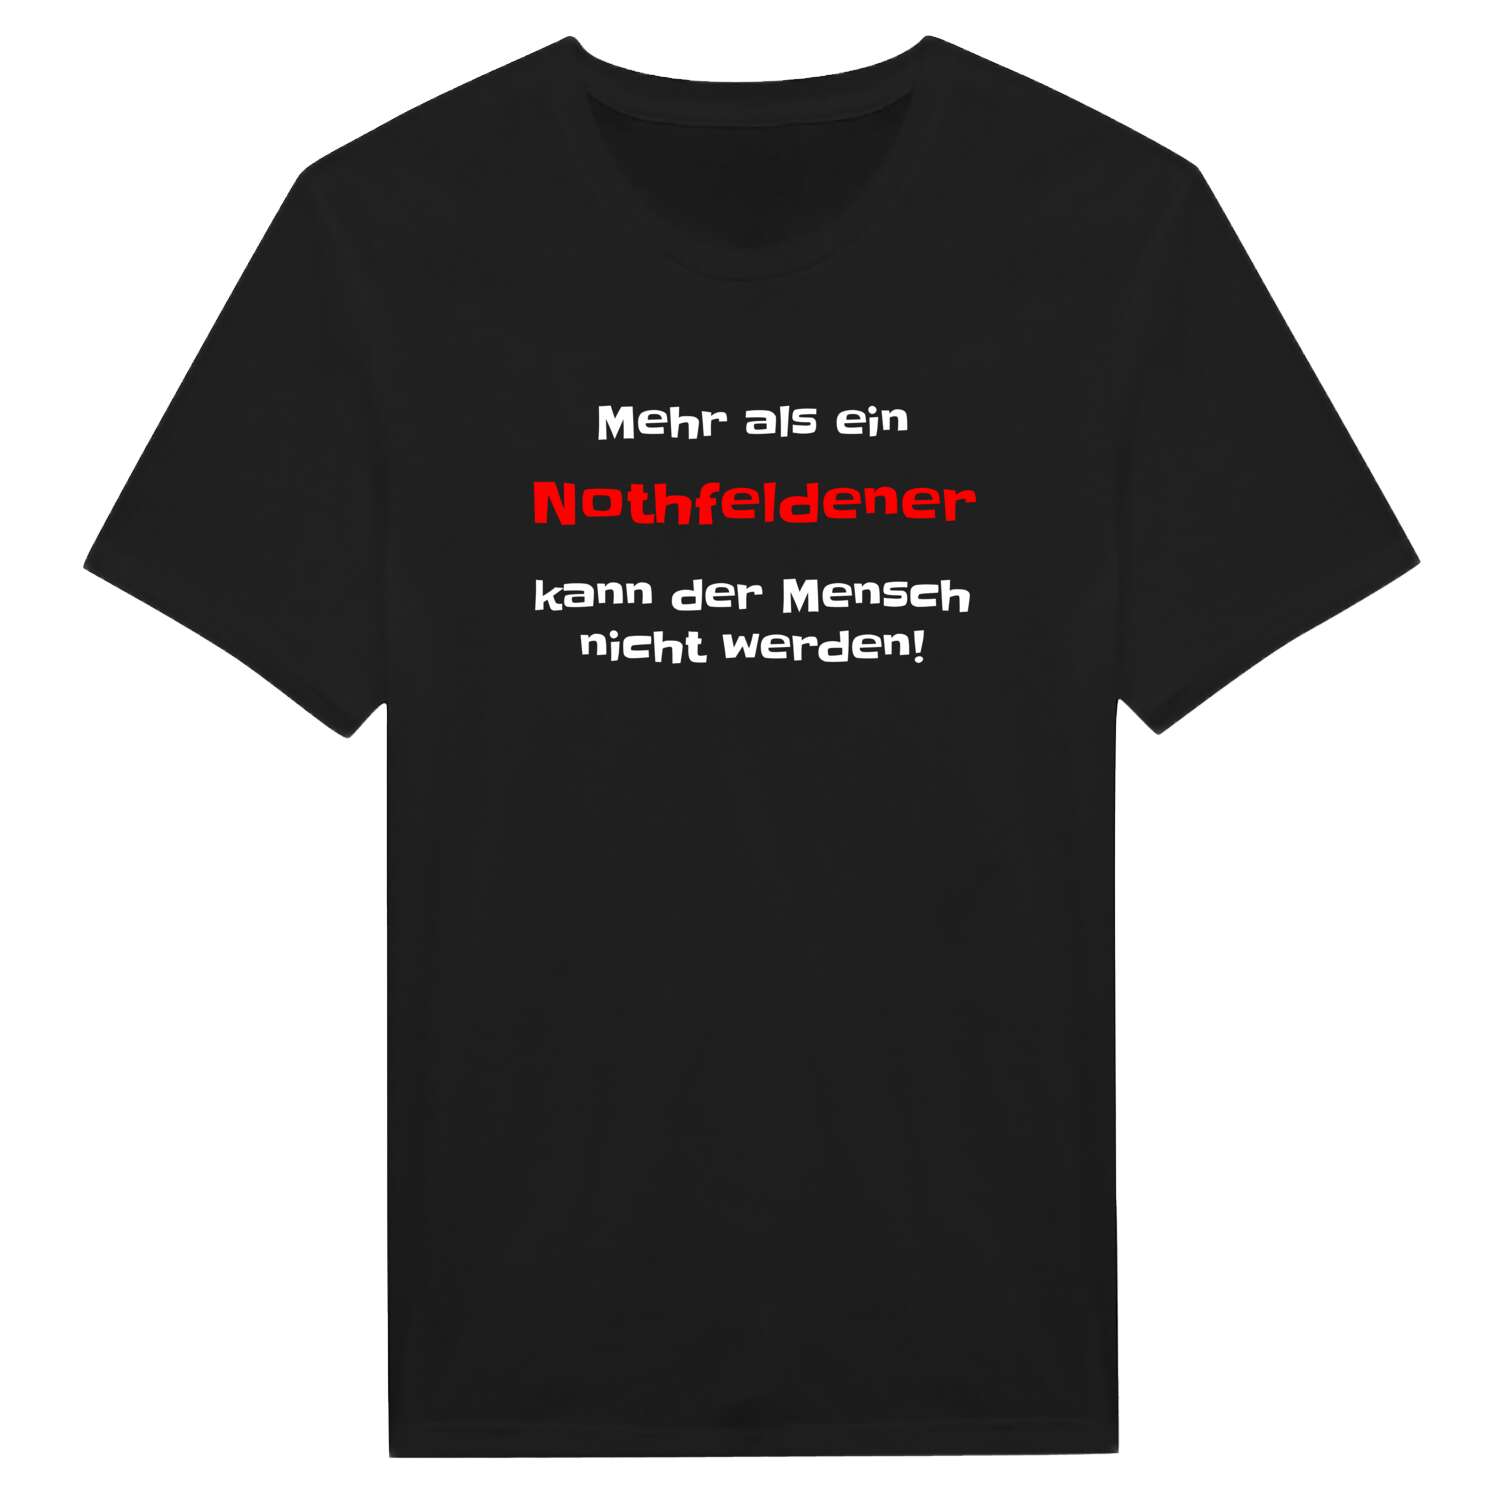 Nothfelden T-Shirt »Mehr als ein«